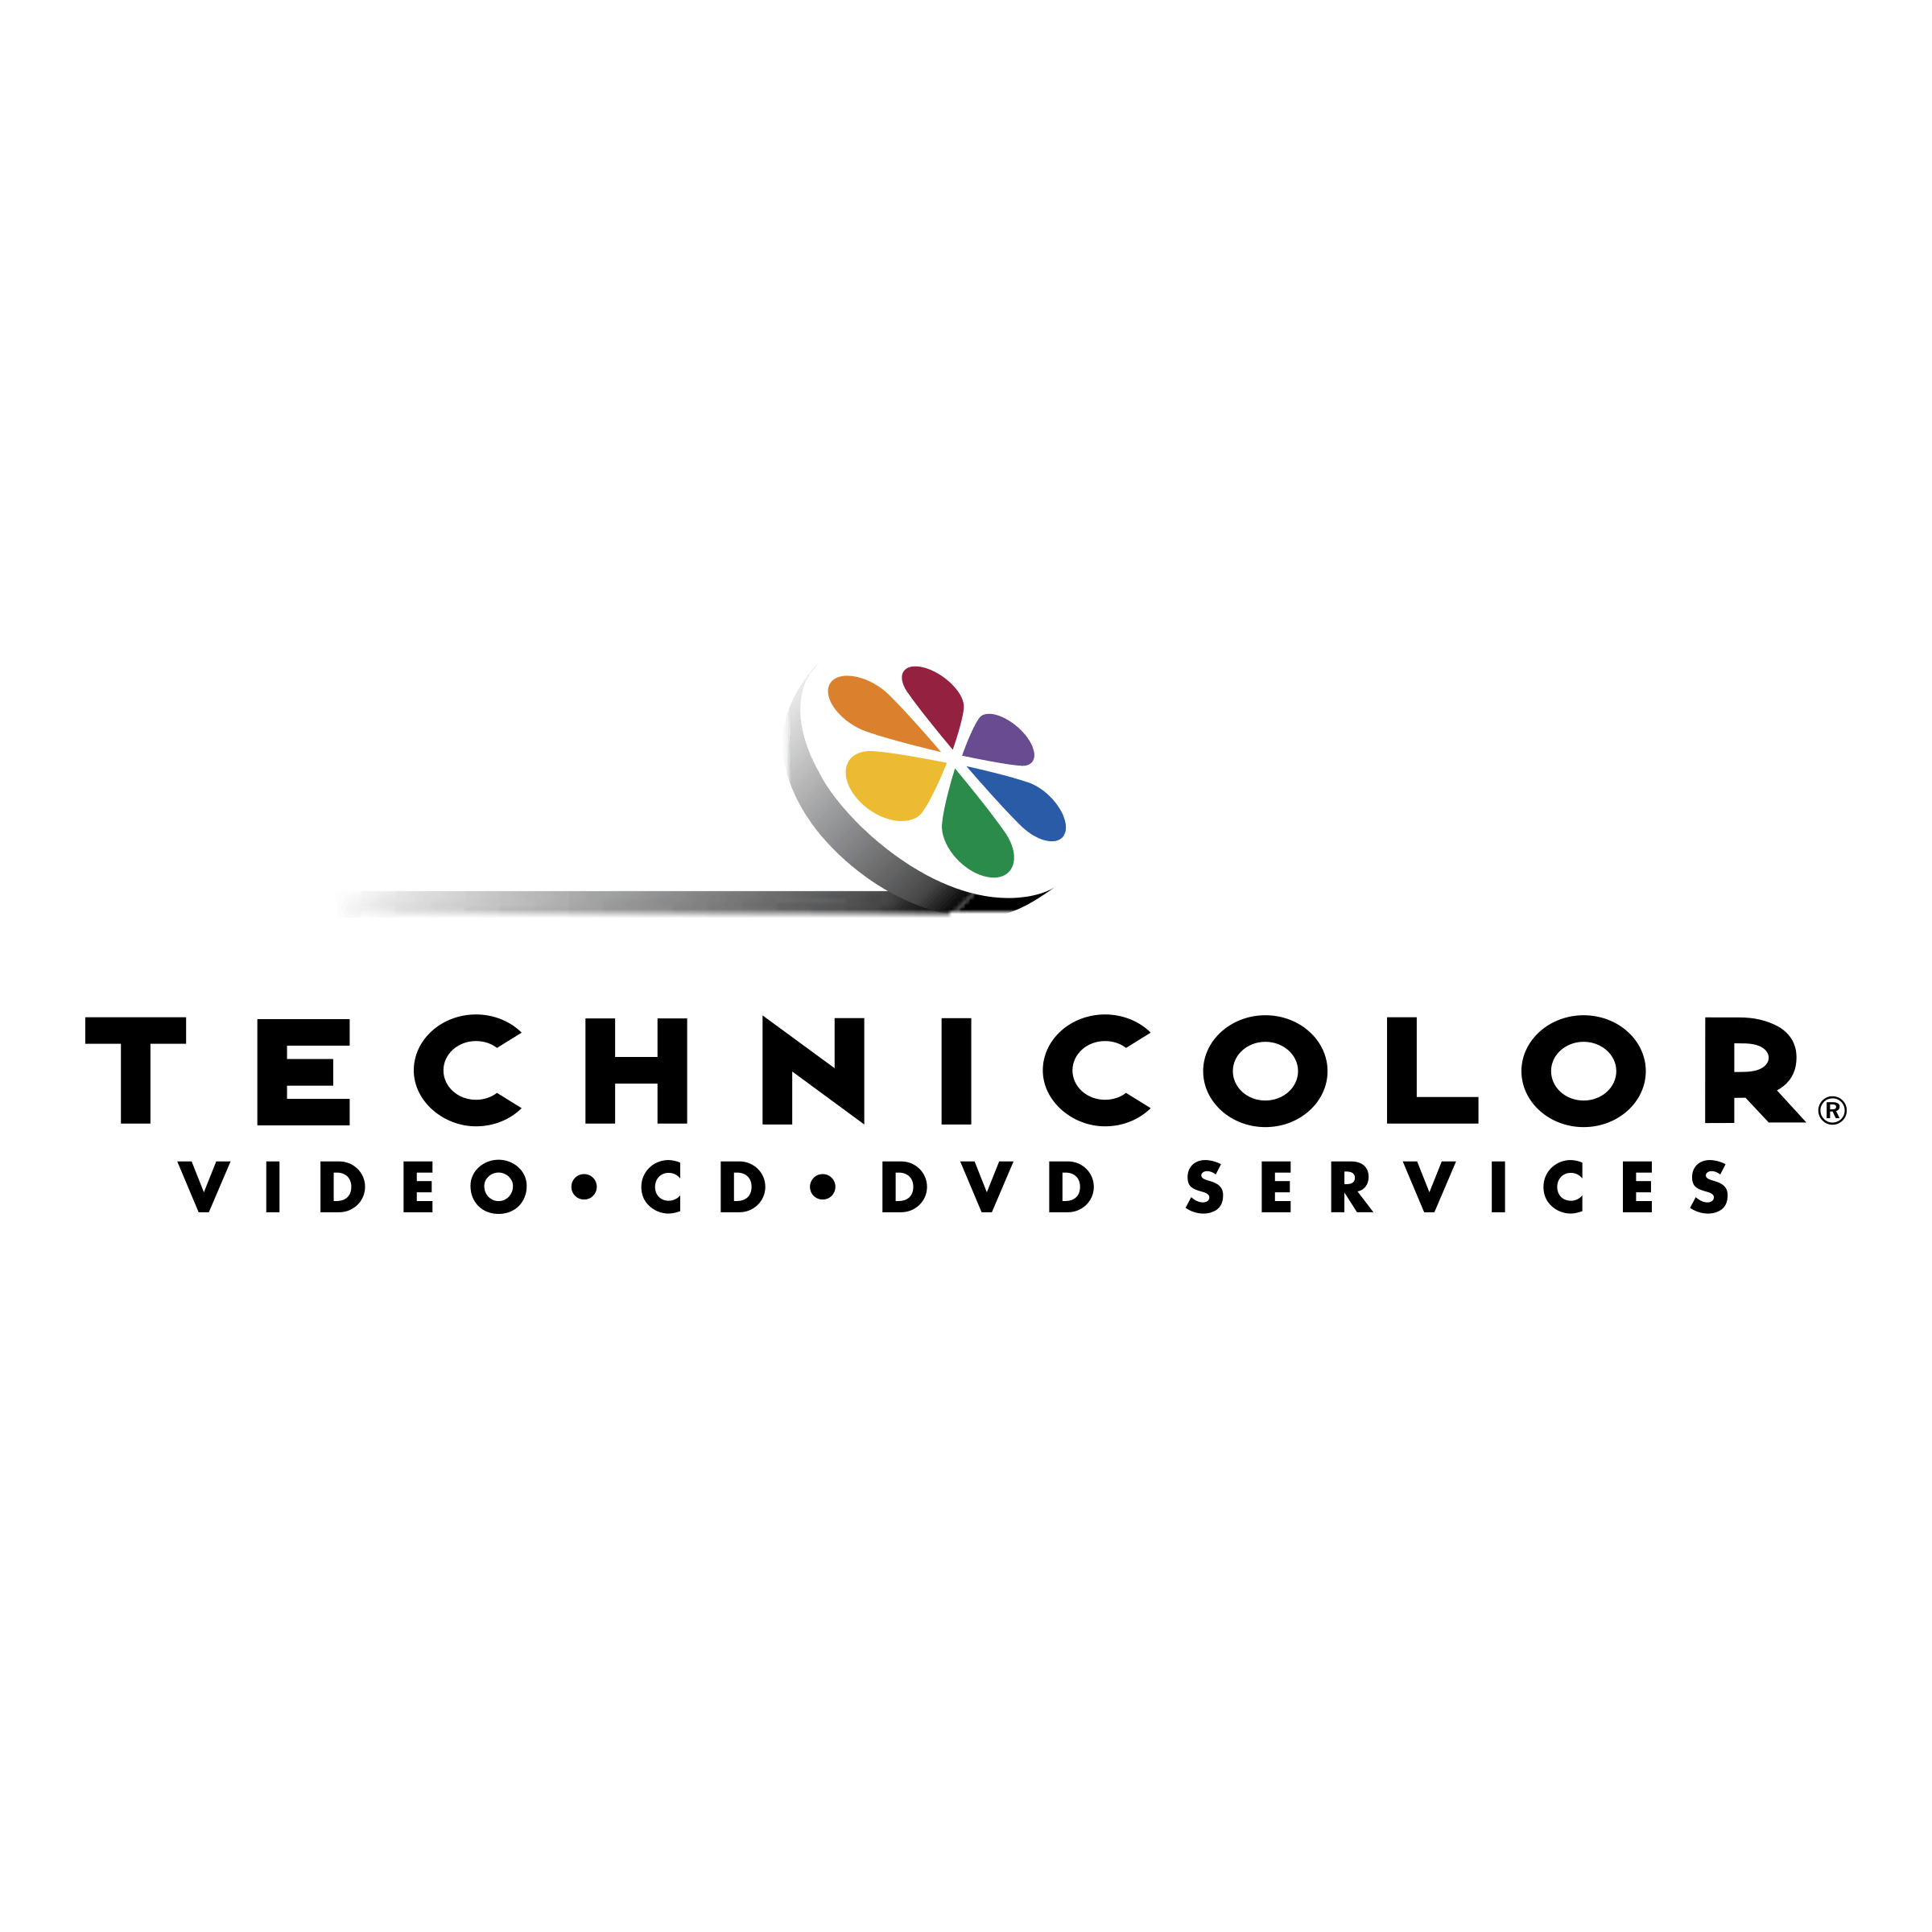 Technicolor Logo - Technicolor Logo PNG Transparent & SVG Vector - Freebie Supply